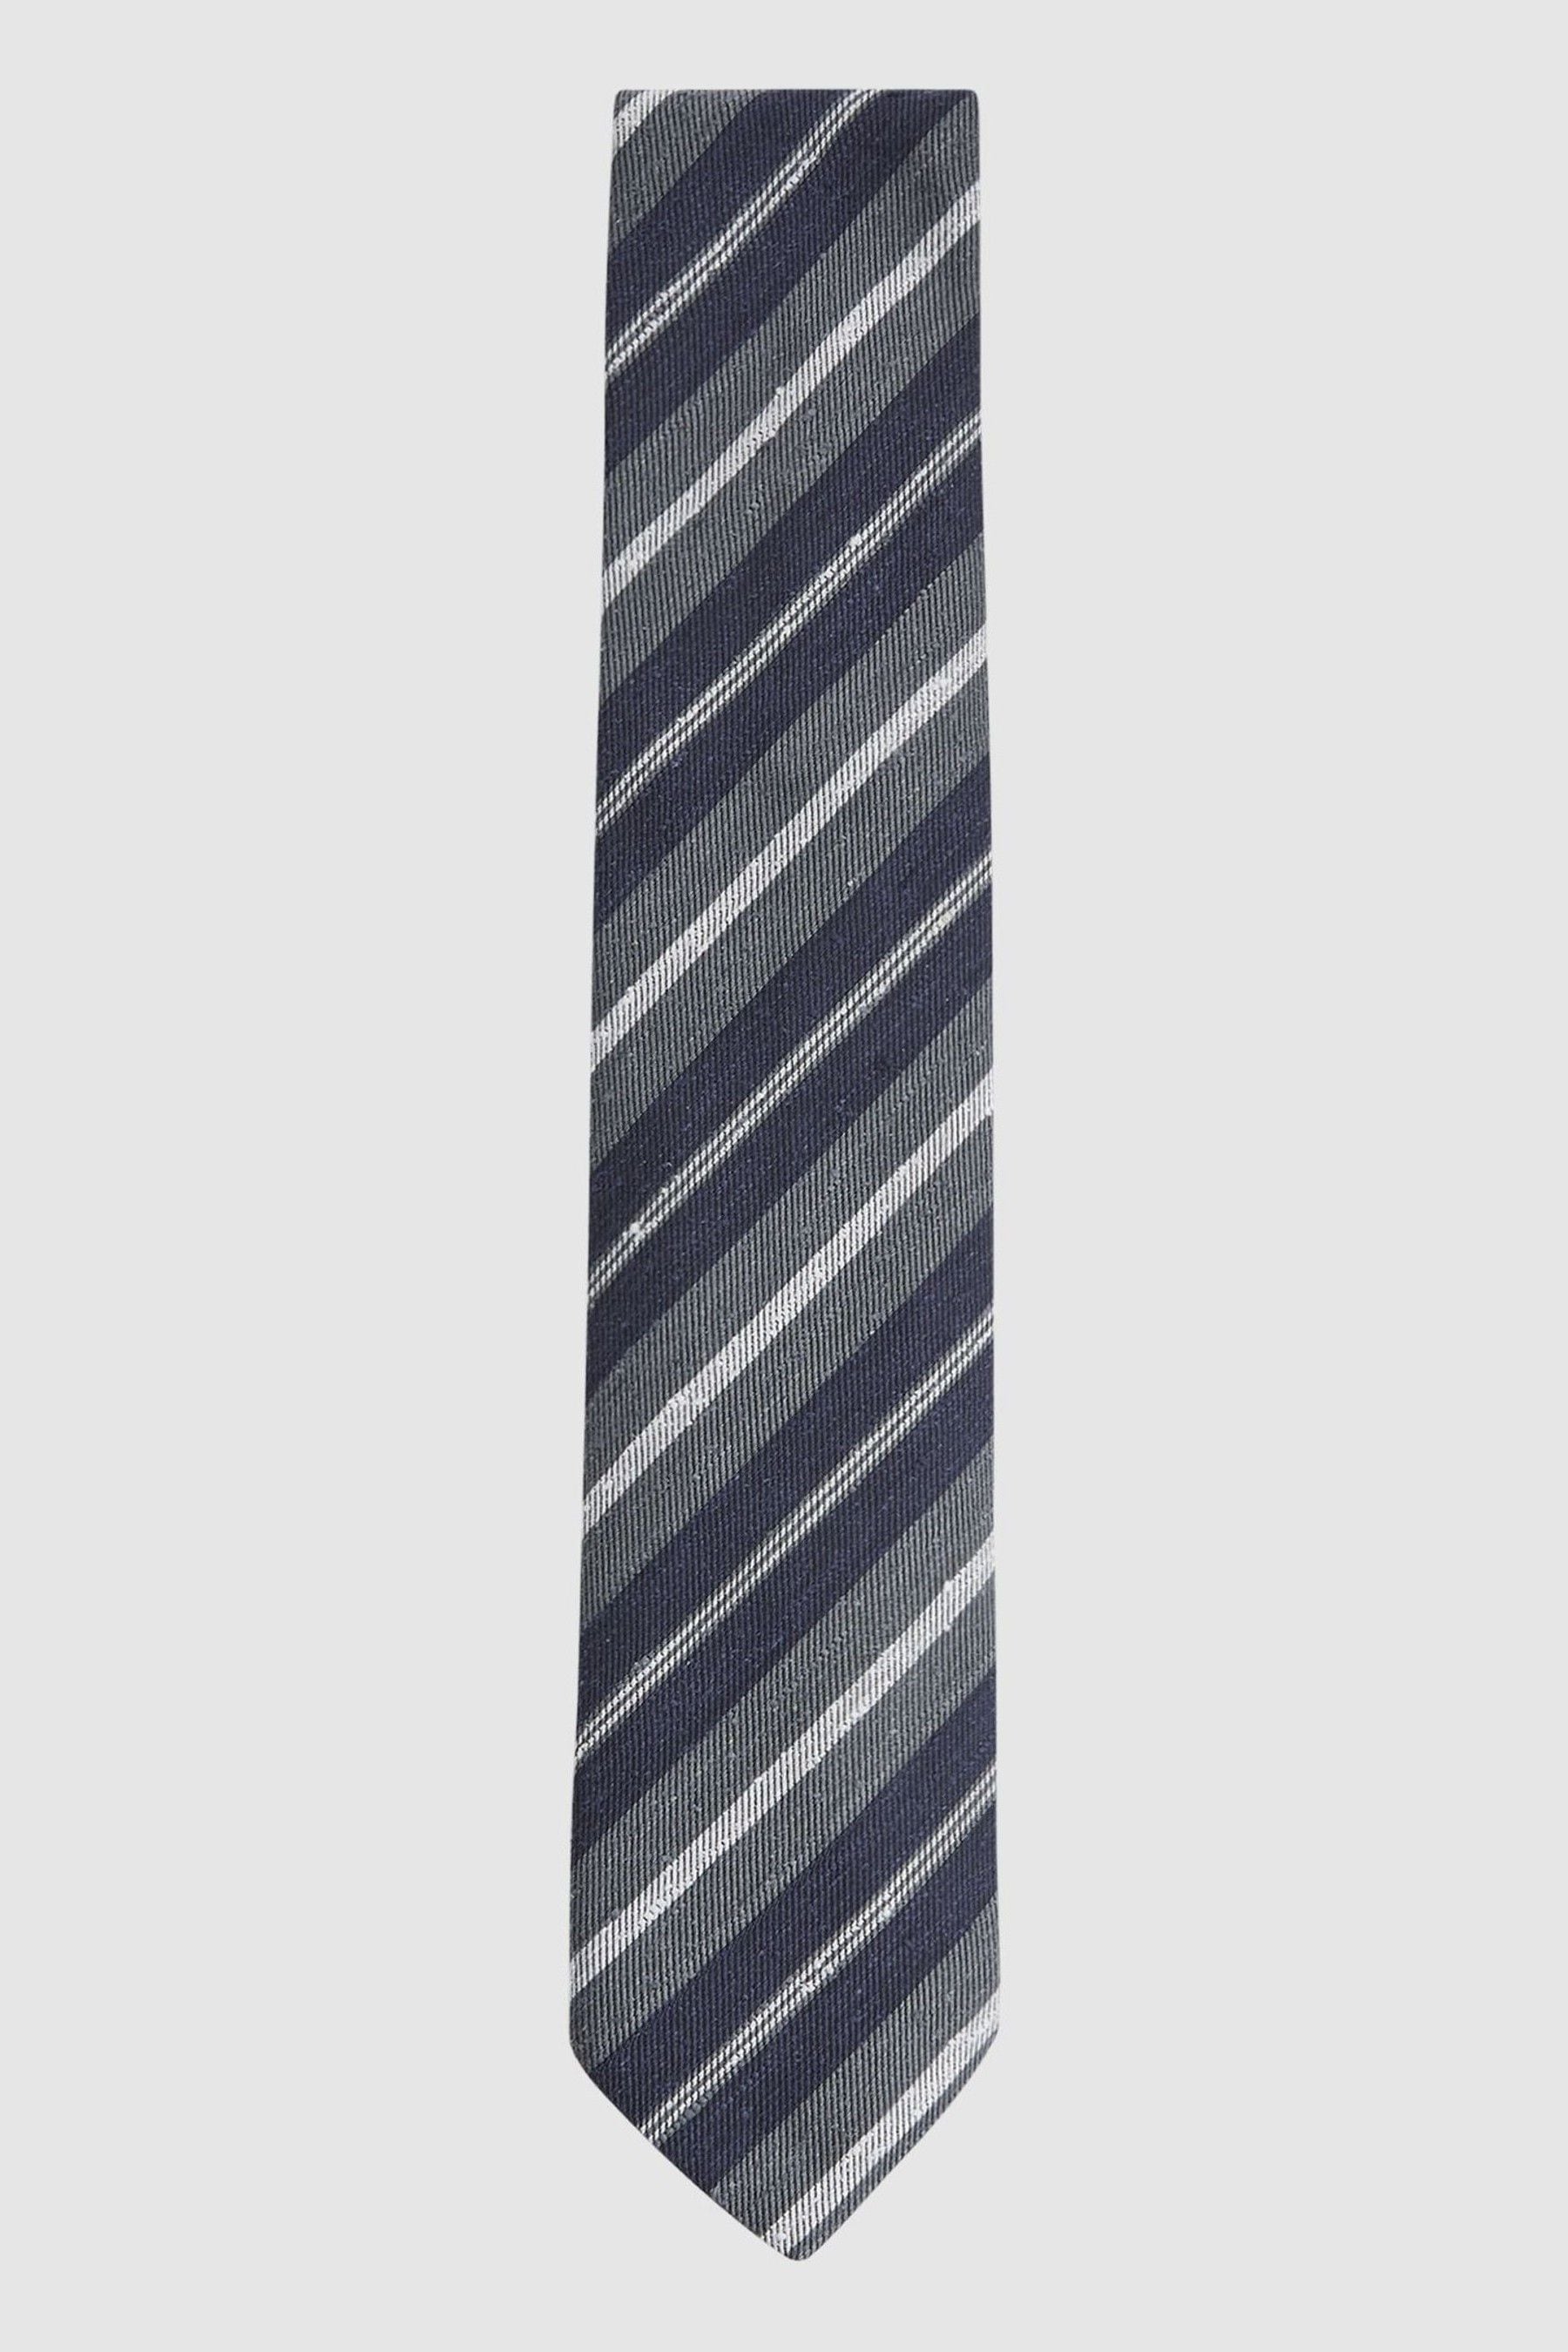 Reiss Lagoon - Navy Silk Textured Stripe Tie, One